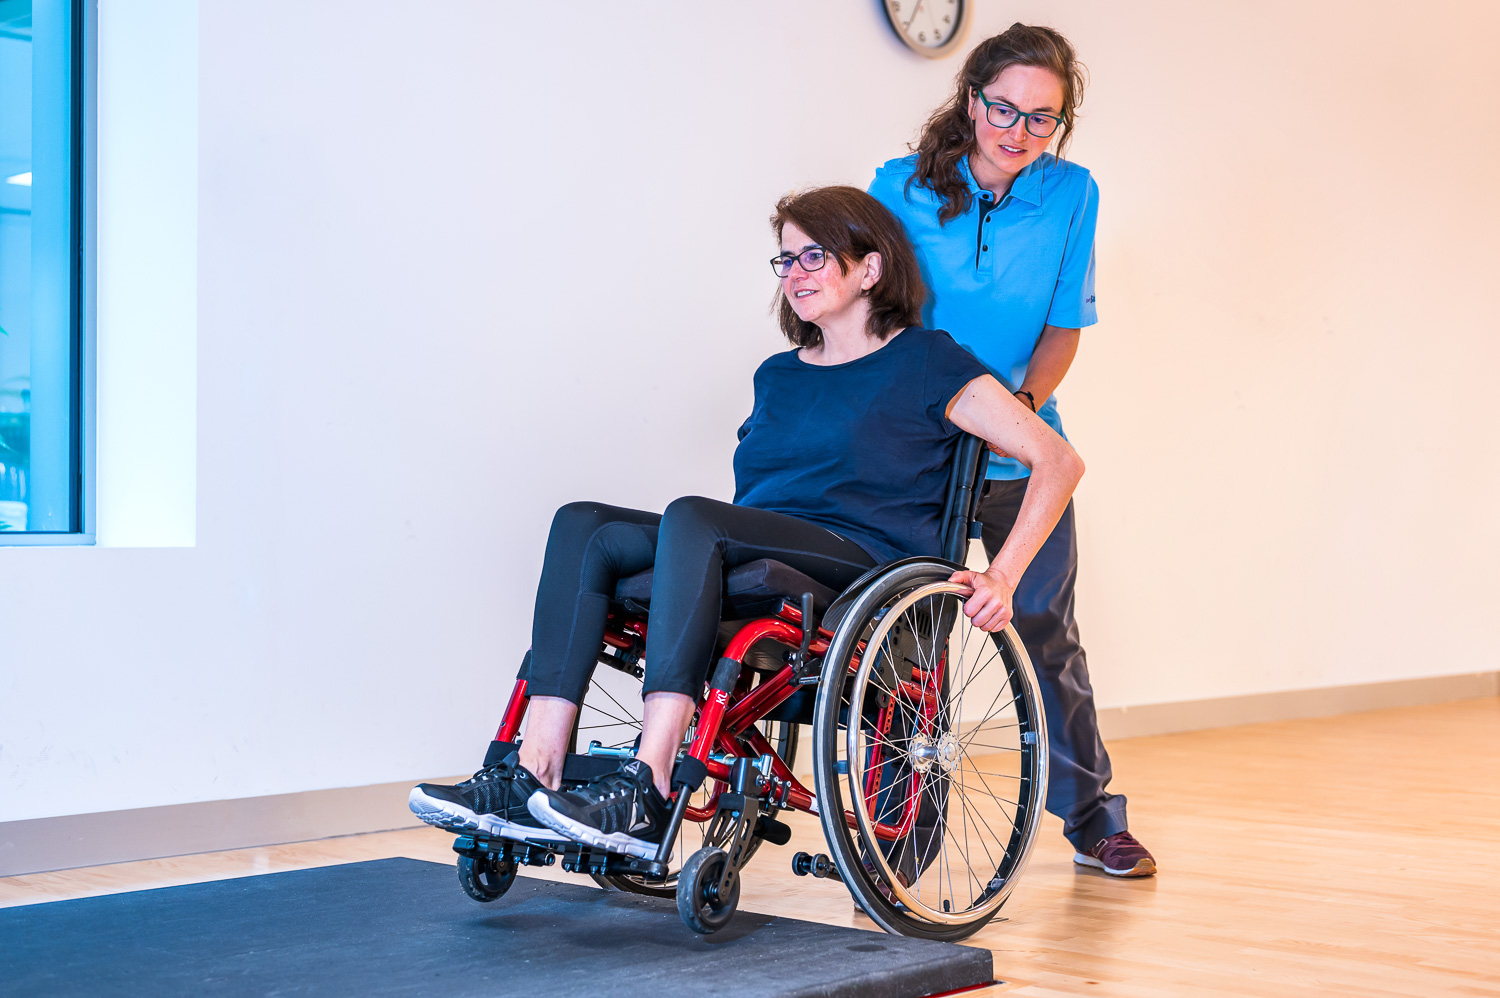 Die Ergotherapeutin hilft der Patientin beim Überwinden eines Absatzes mit dem Rollstuhl.